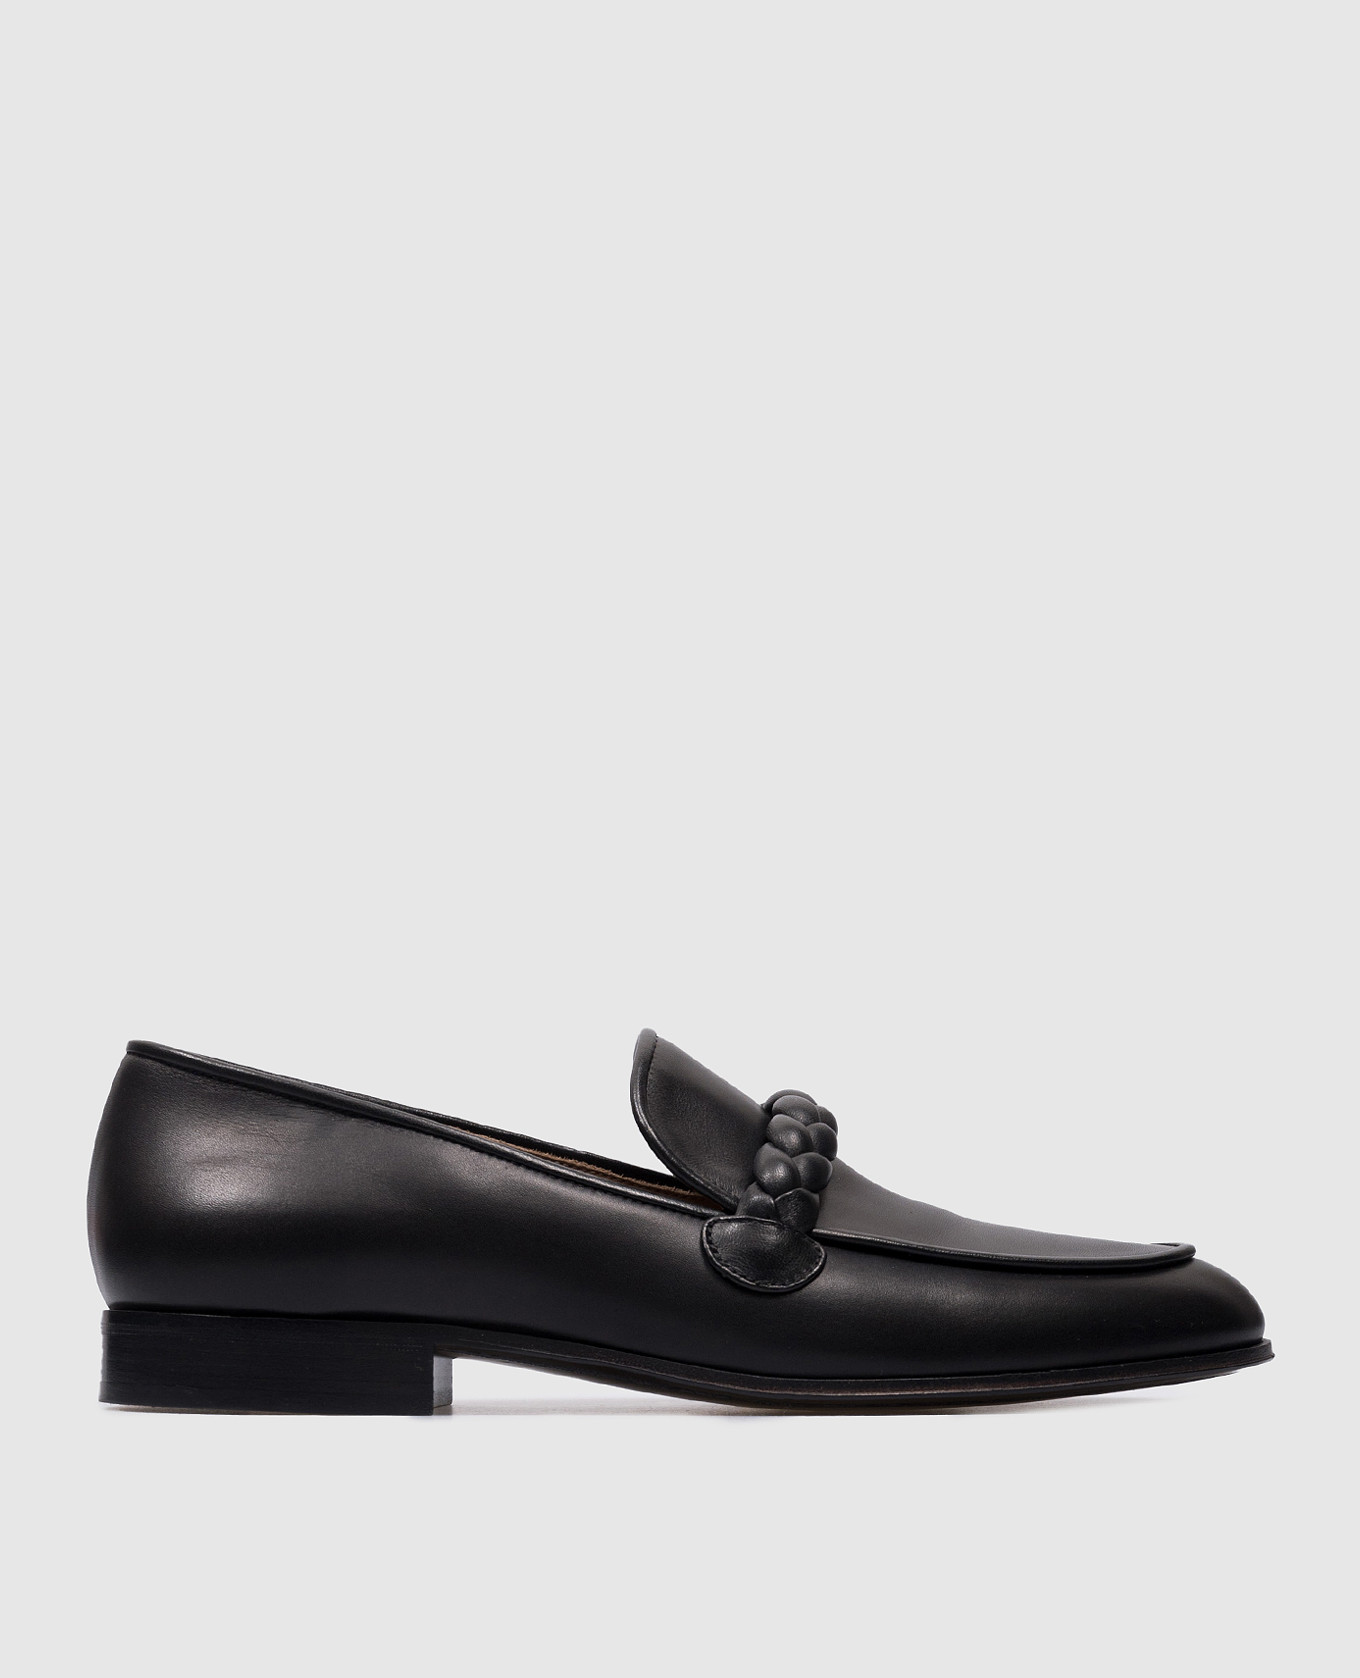 Belem black leather loafers